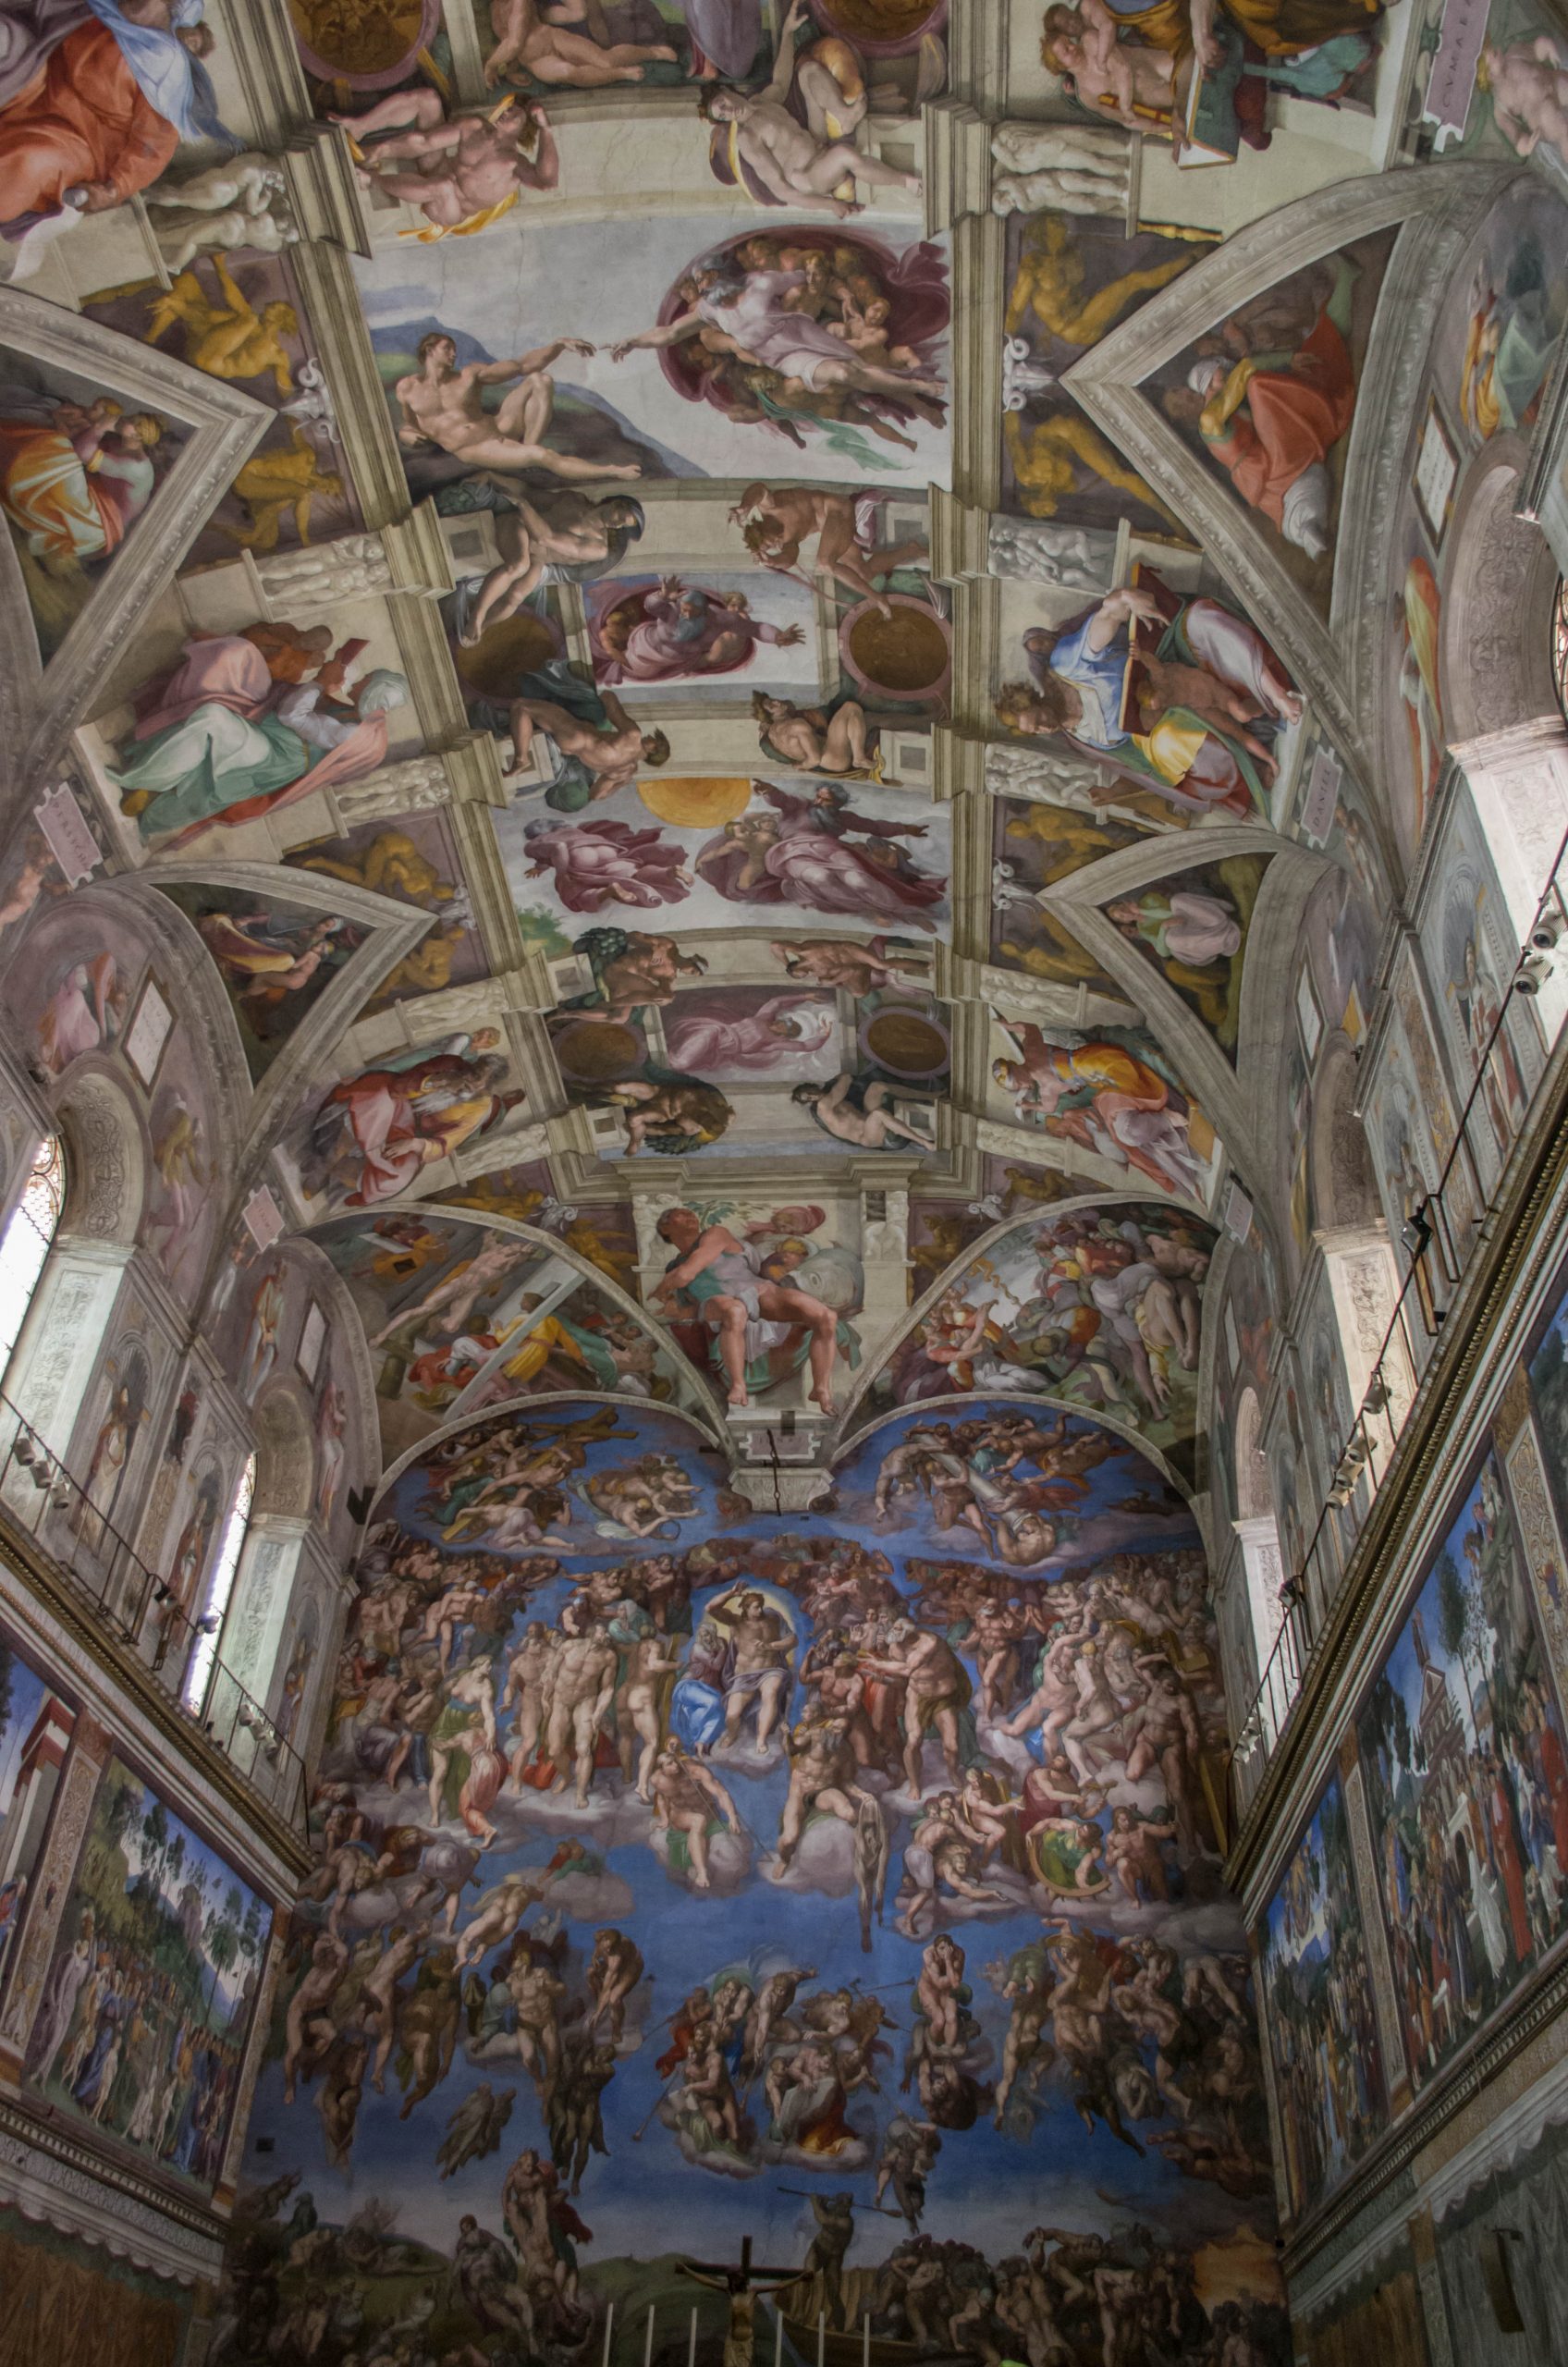 Michaelangelo Paintings - The Sistine Chapel Ceiling